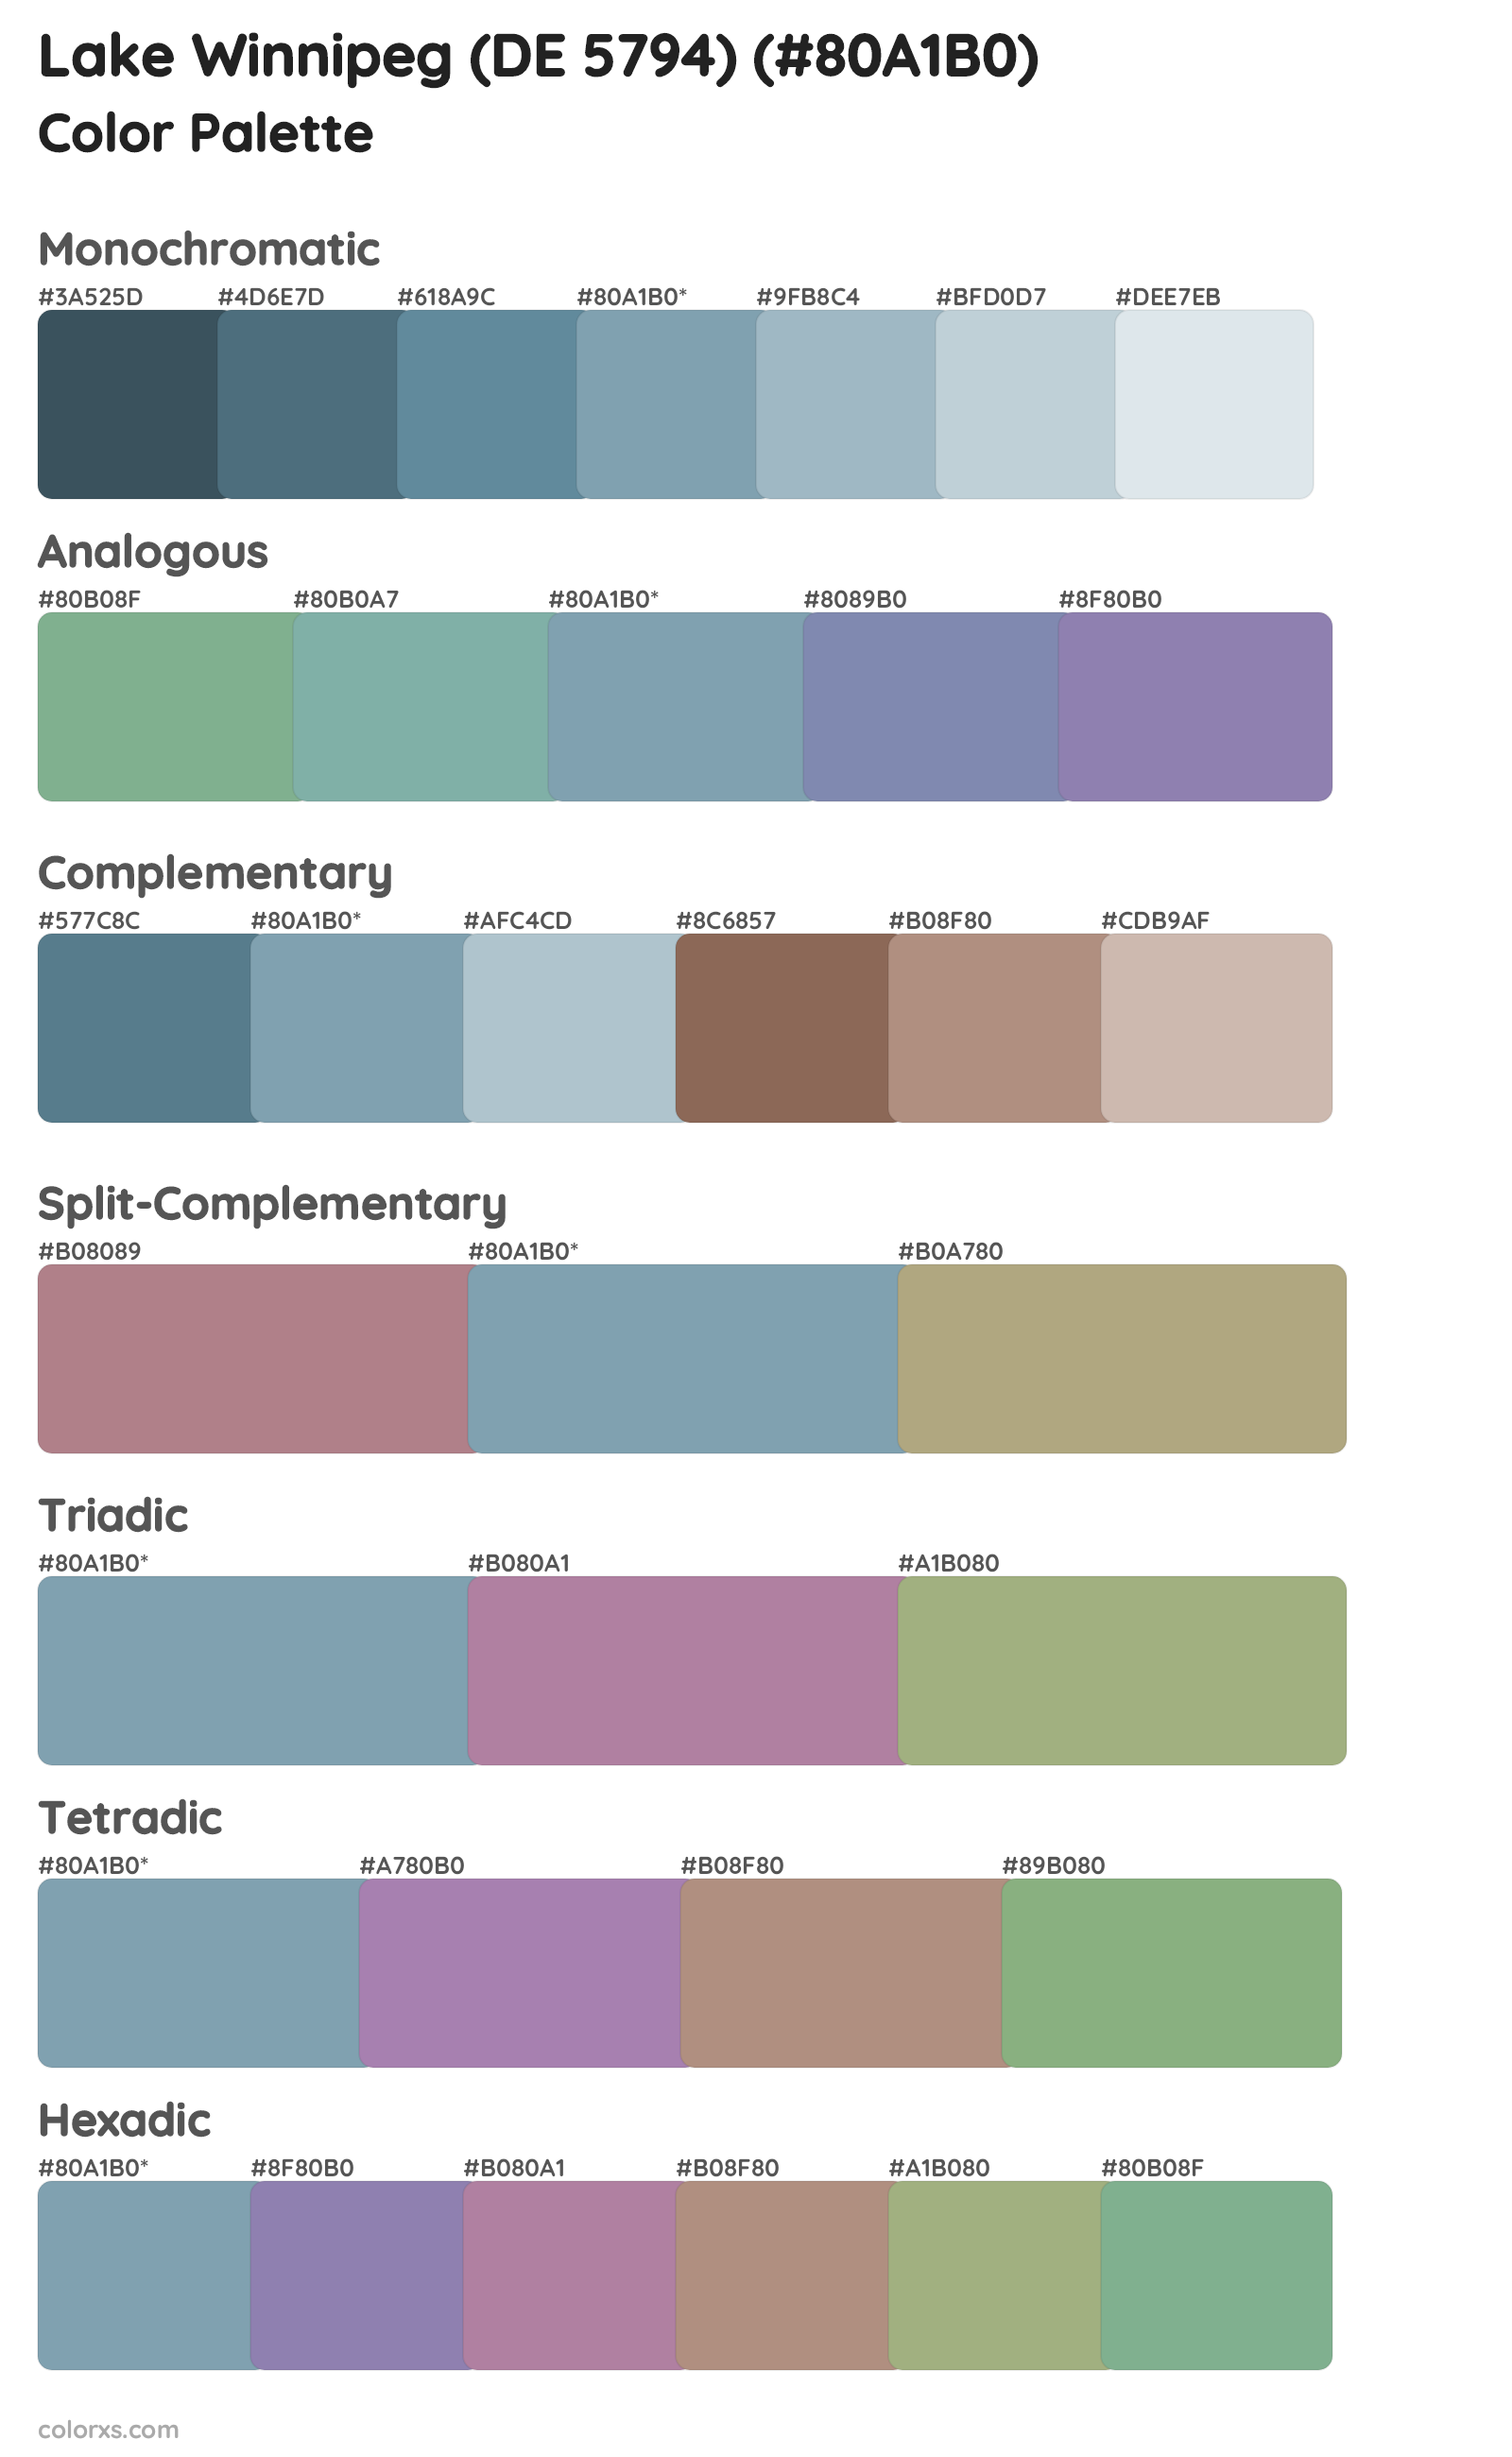 Lake Winnipeg (DE 5794) Color Scheme Palettes